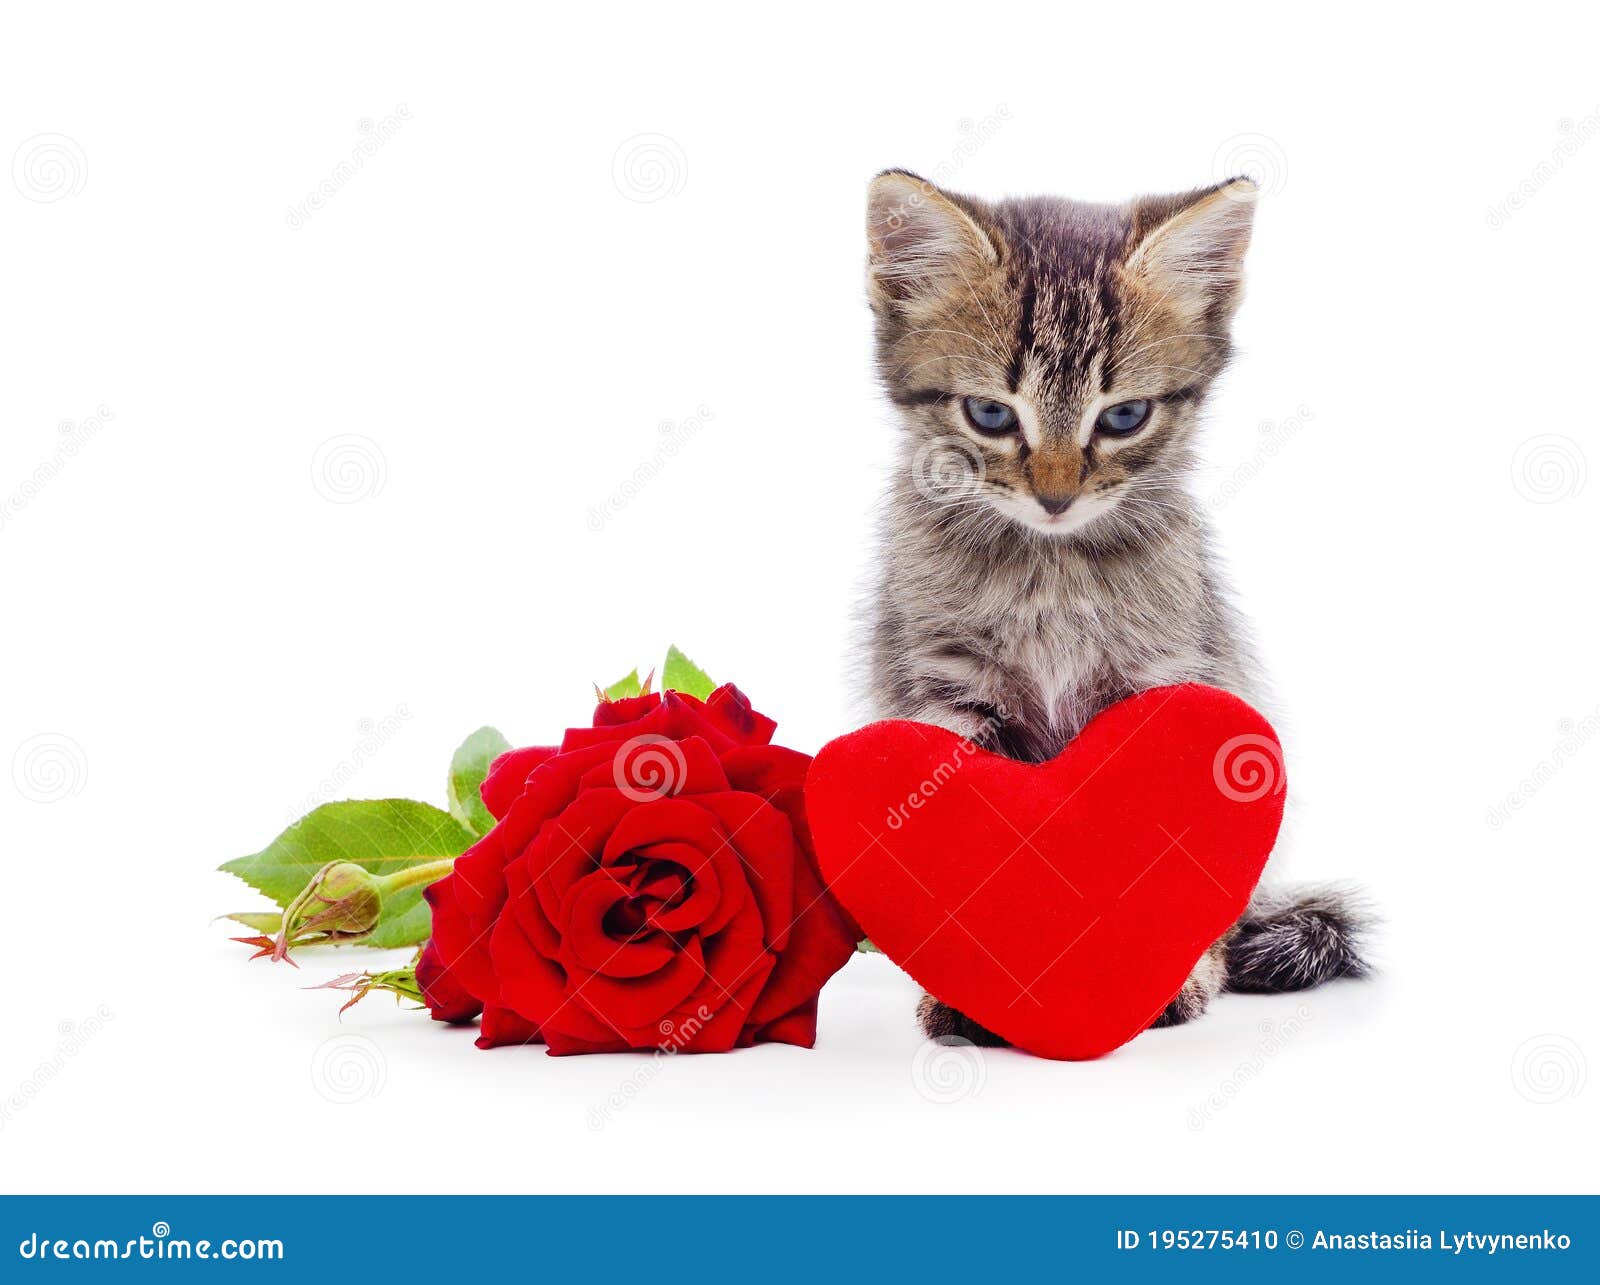 Liever Betasten Landgoed Kat met roos en hart stock foto. Image of katachtig - 195275410